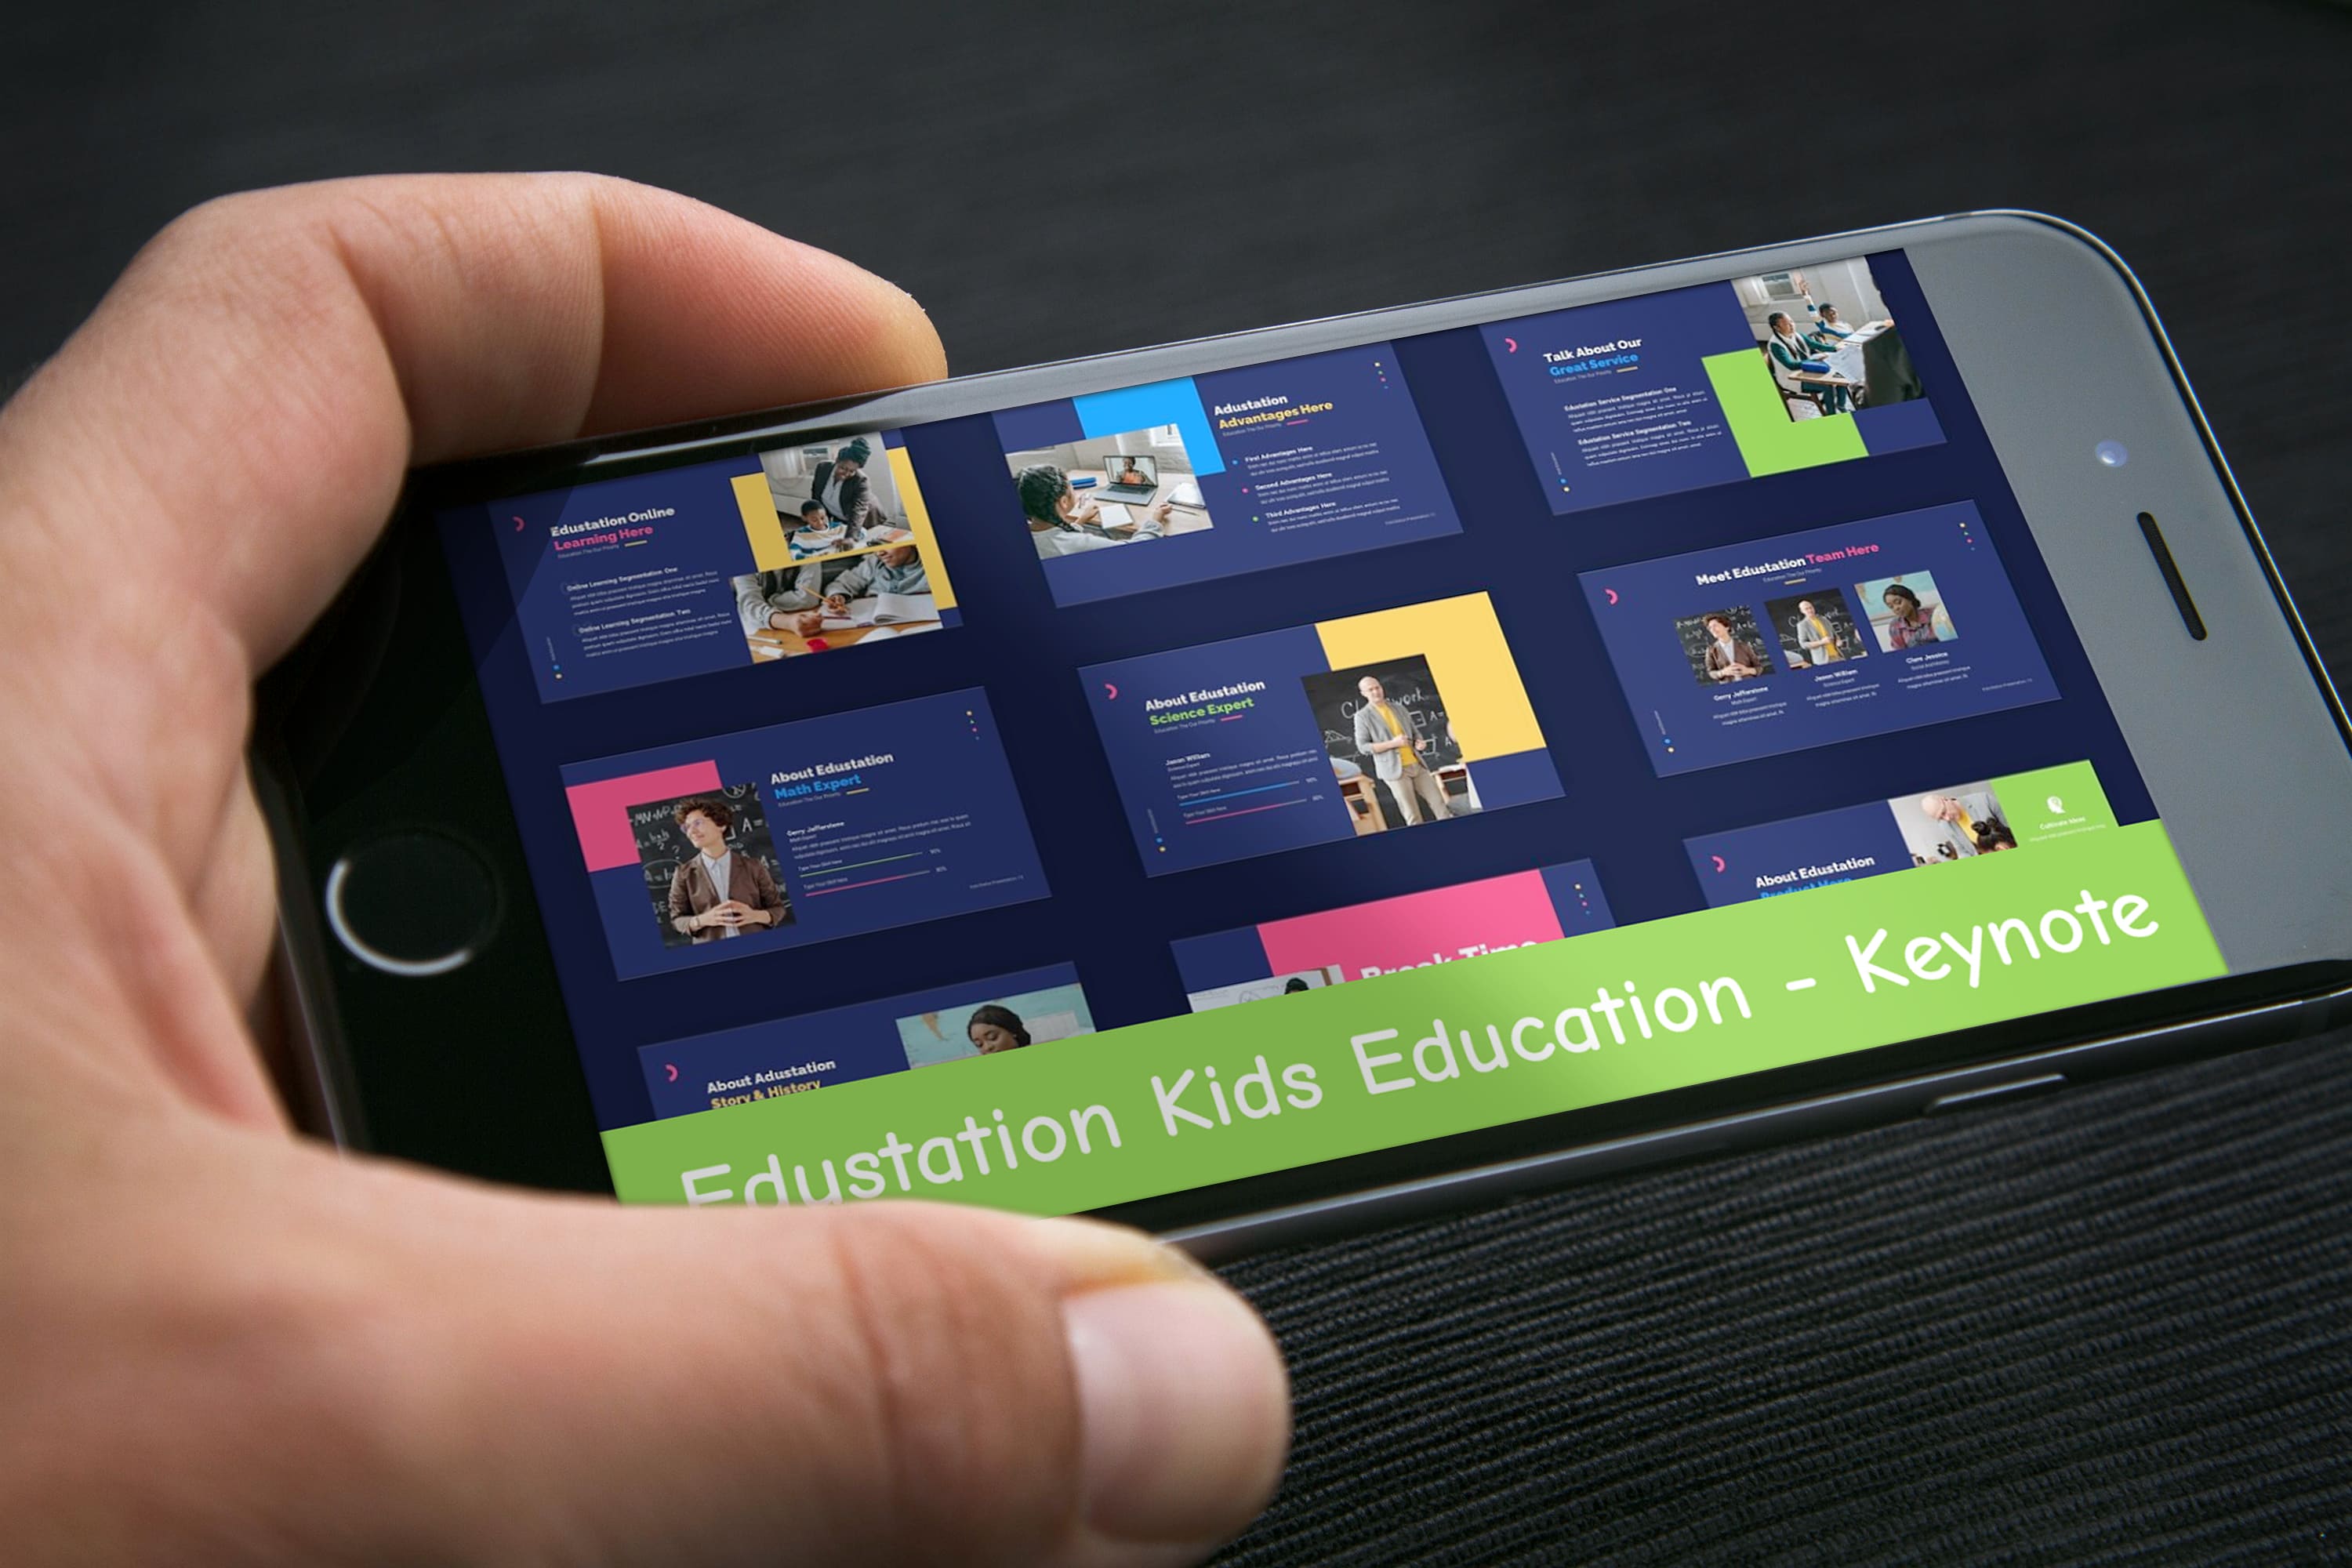 Edustation Kids Education - Keynote - Mockup on Smartphone.